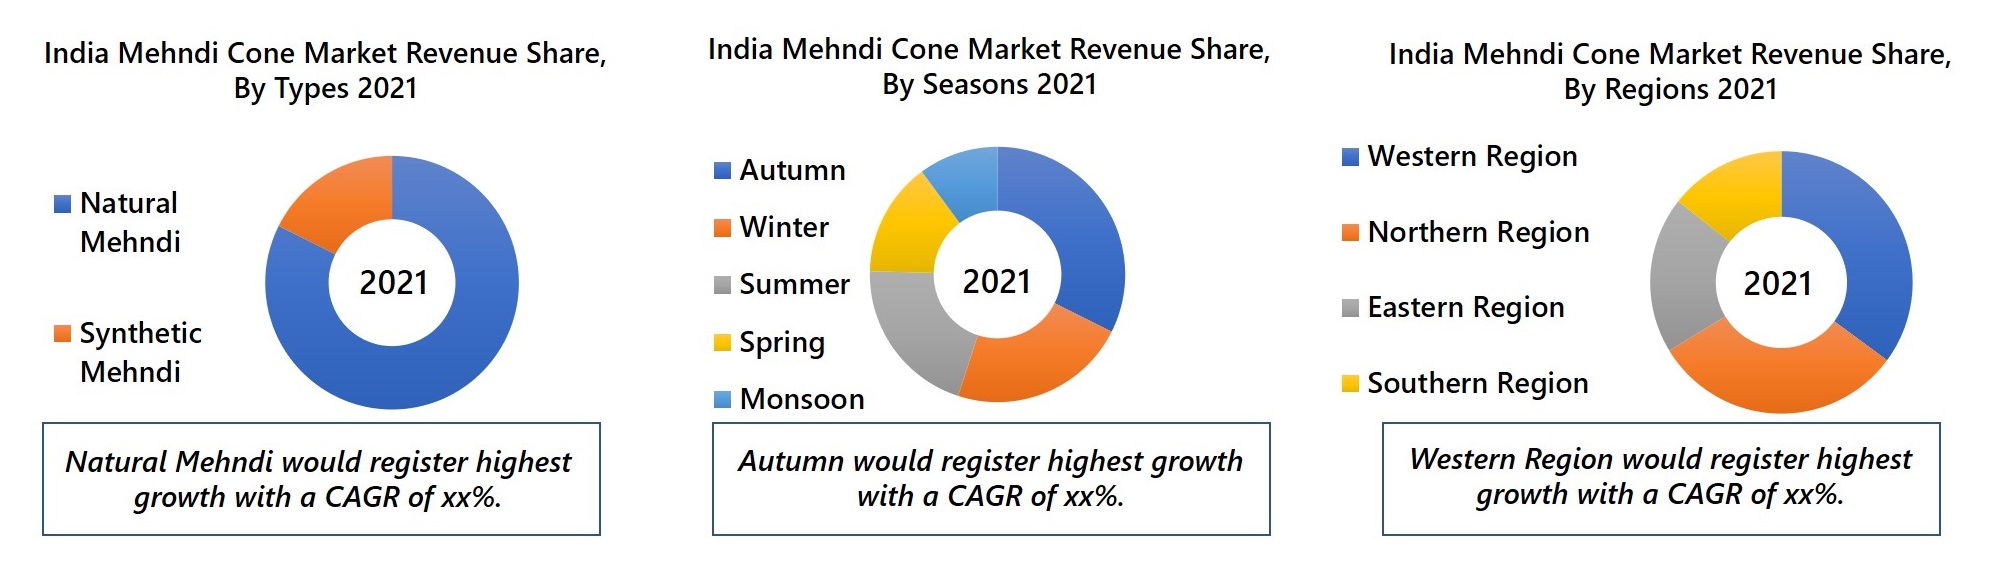 India Mehndi Cone Market Revenue Share